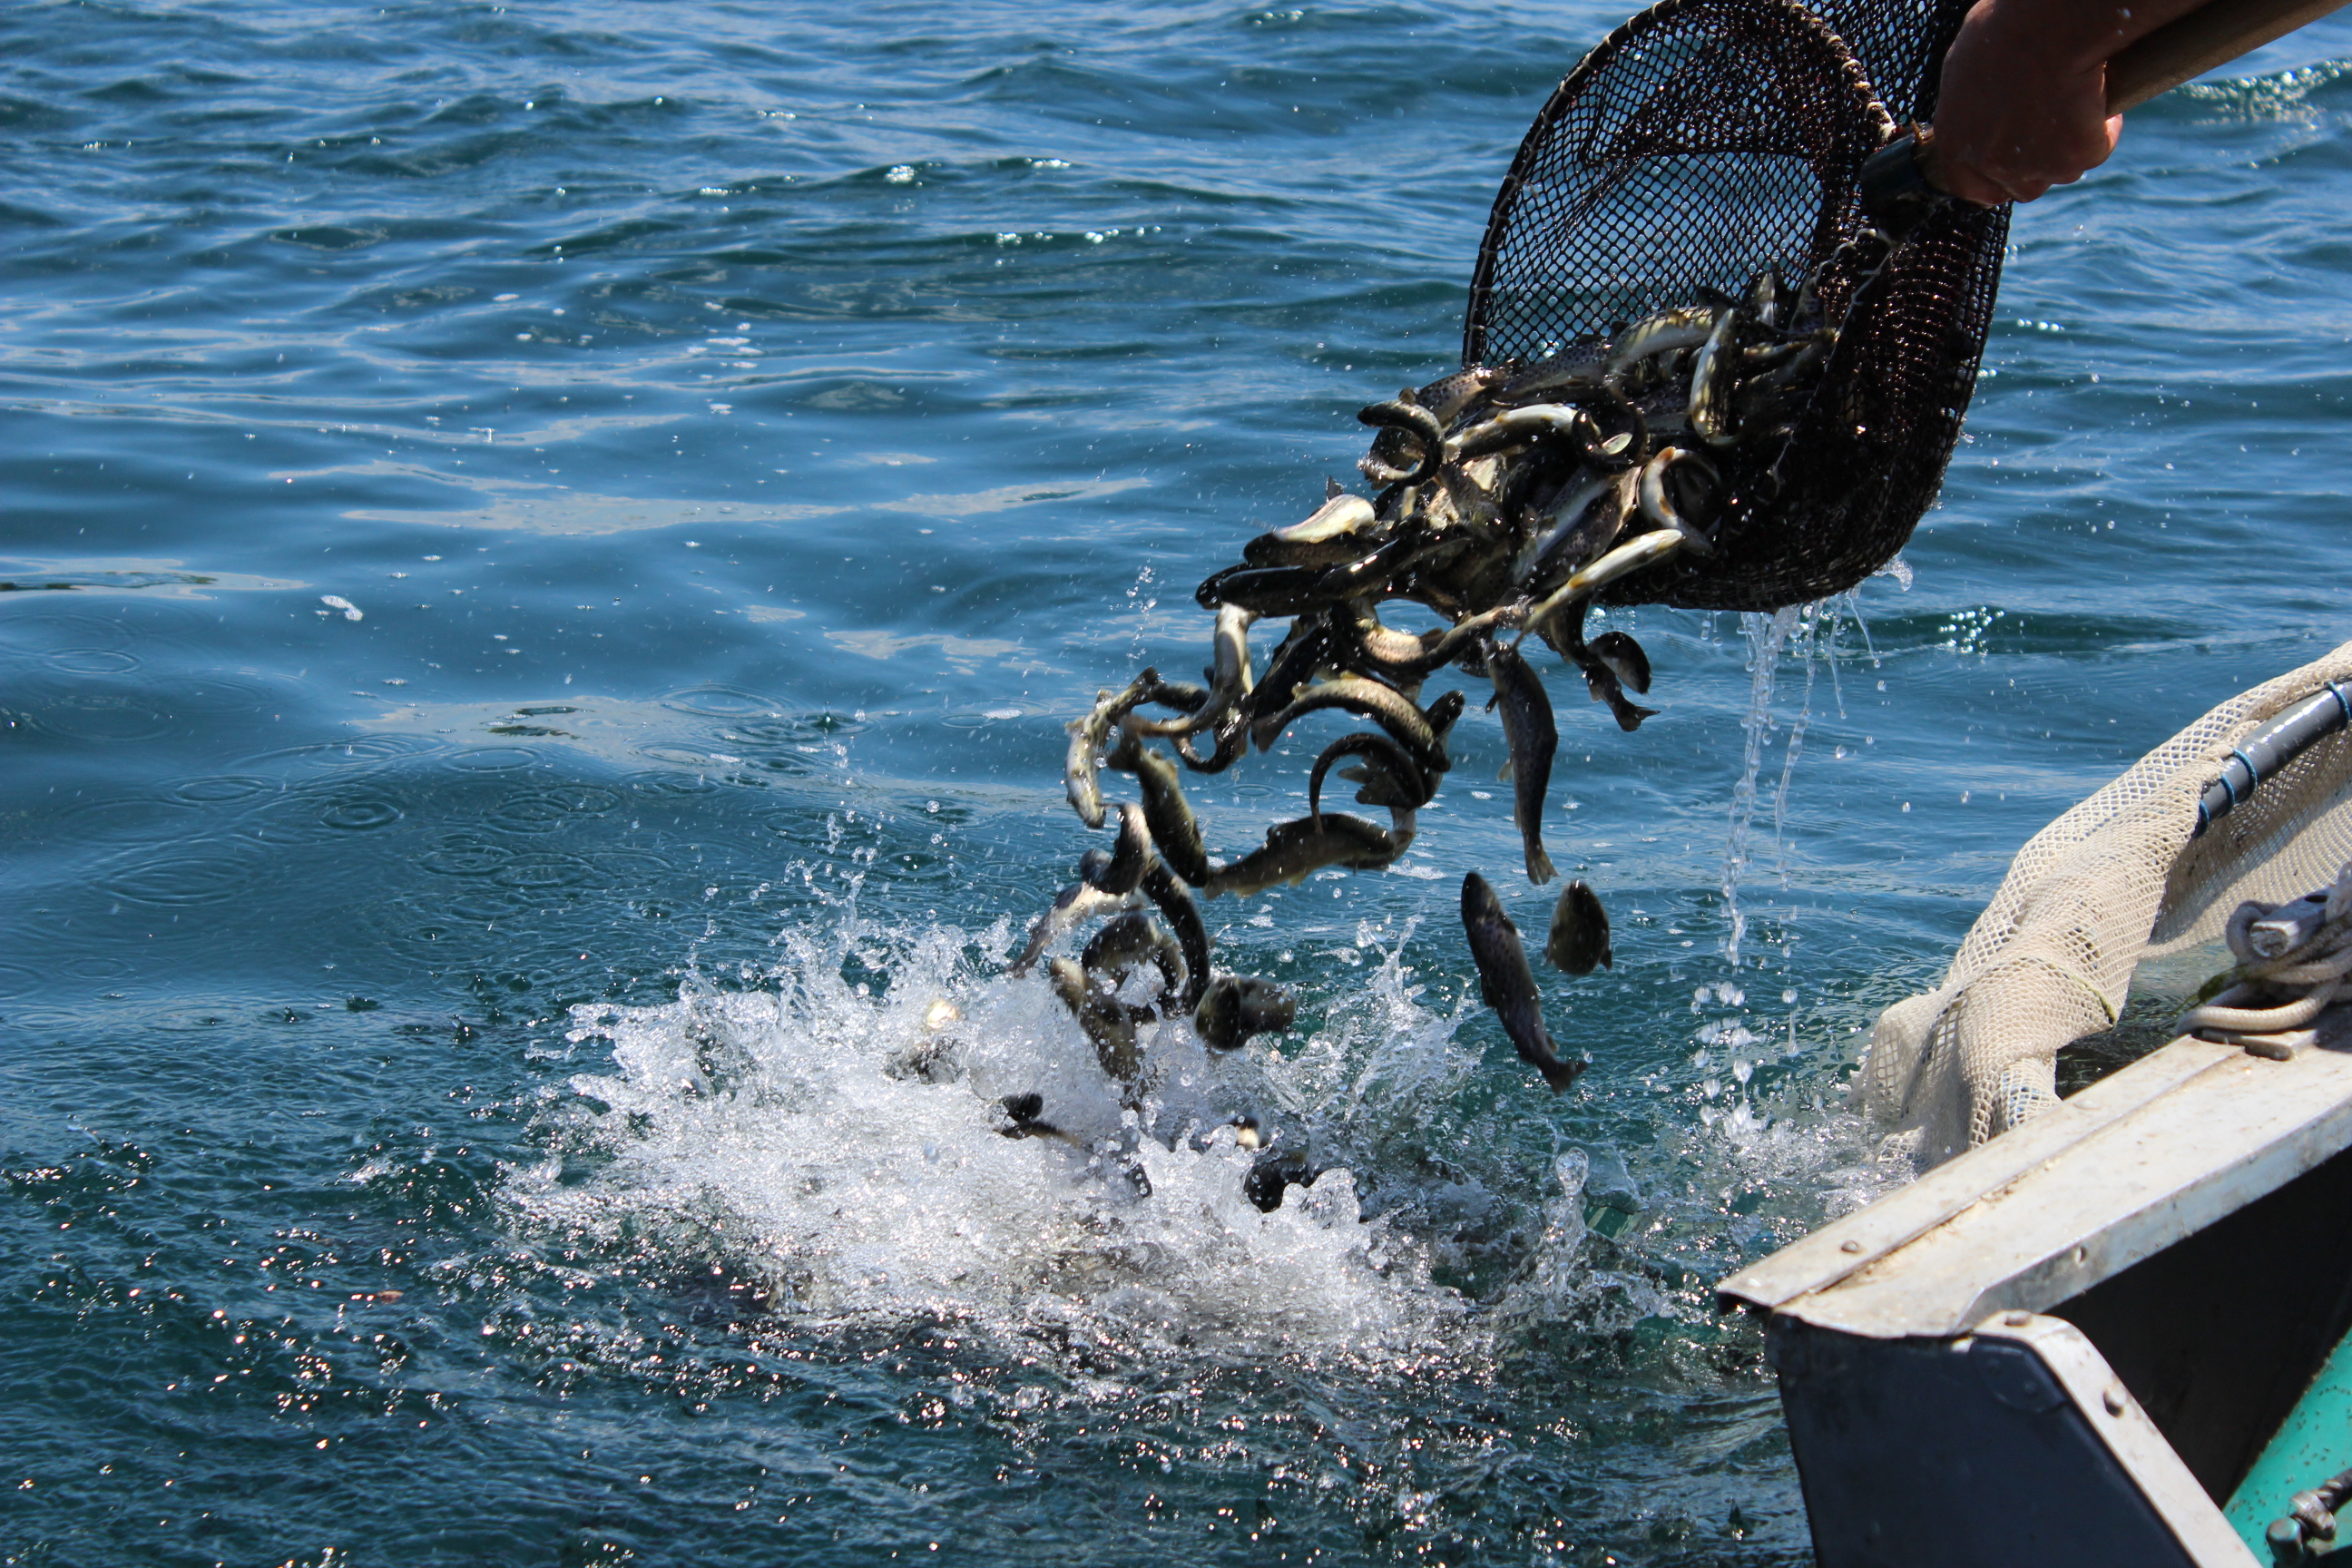 Սևանա լճում ձկնային պաշարների հետազոտման համար սարք ձեռք կբերվի